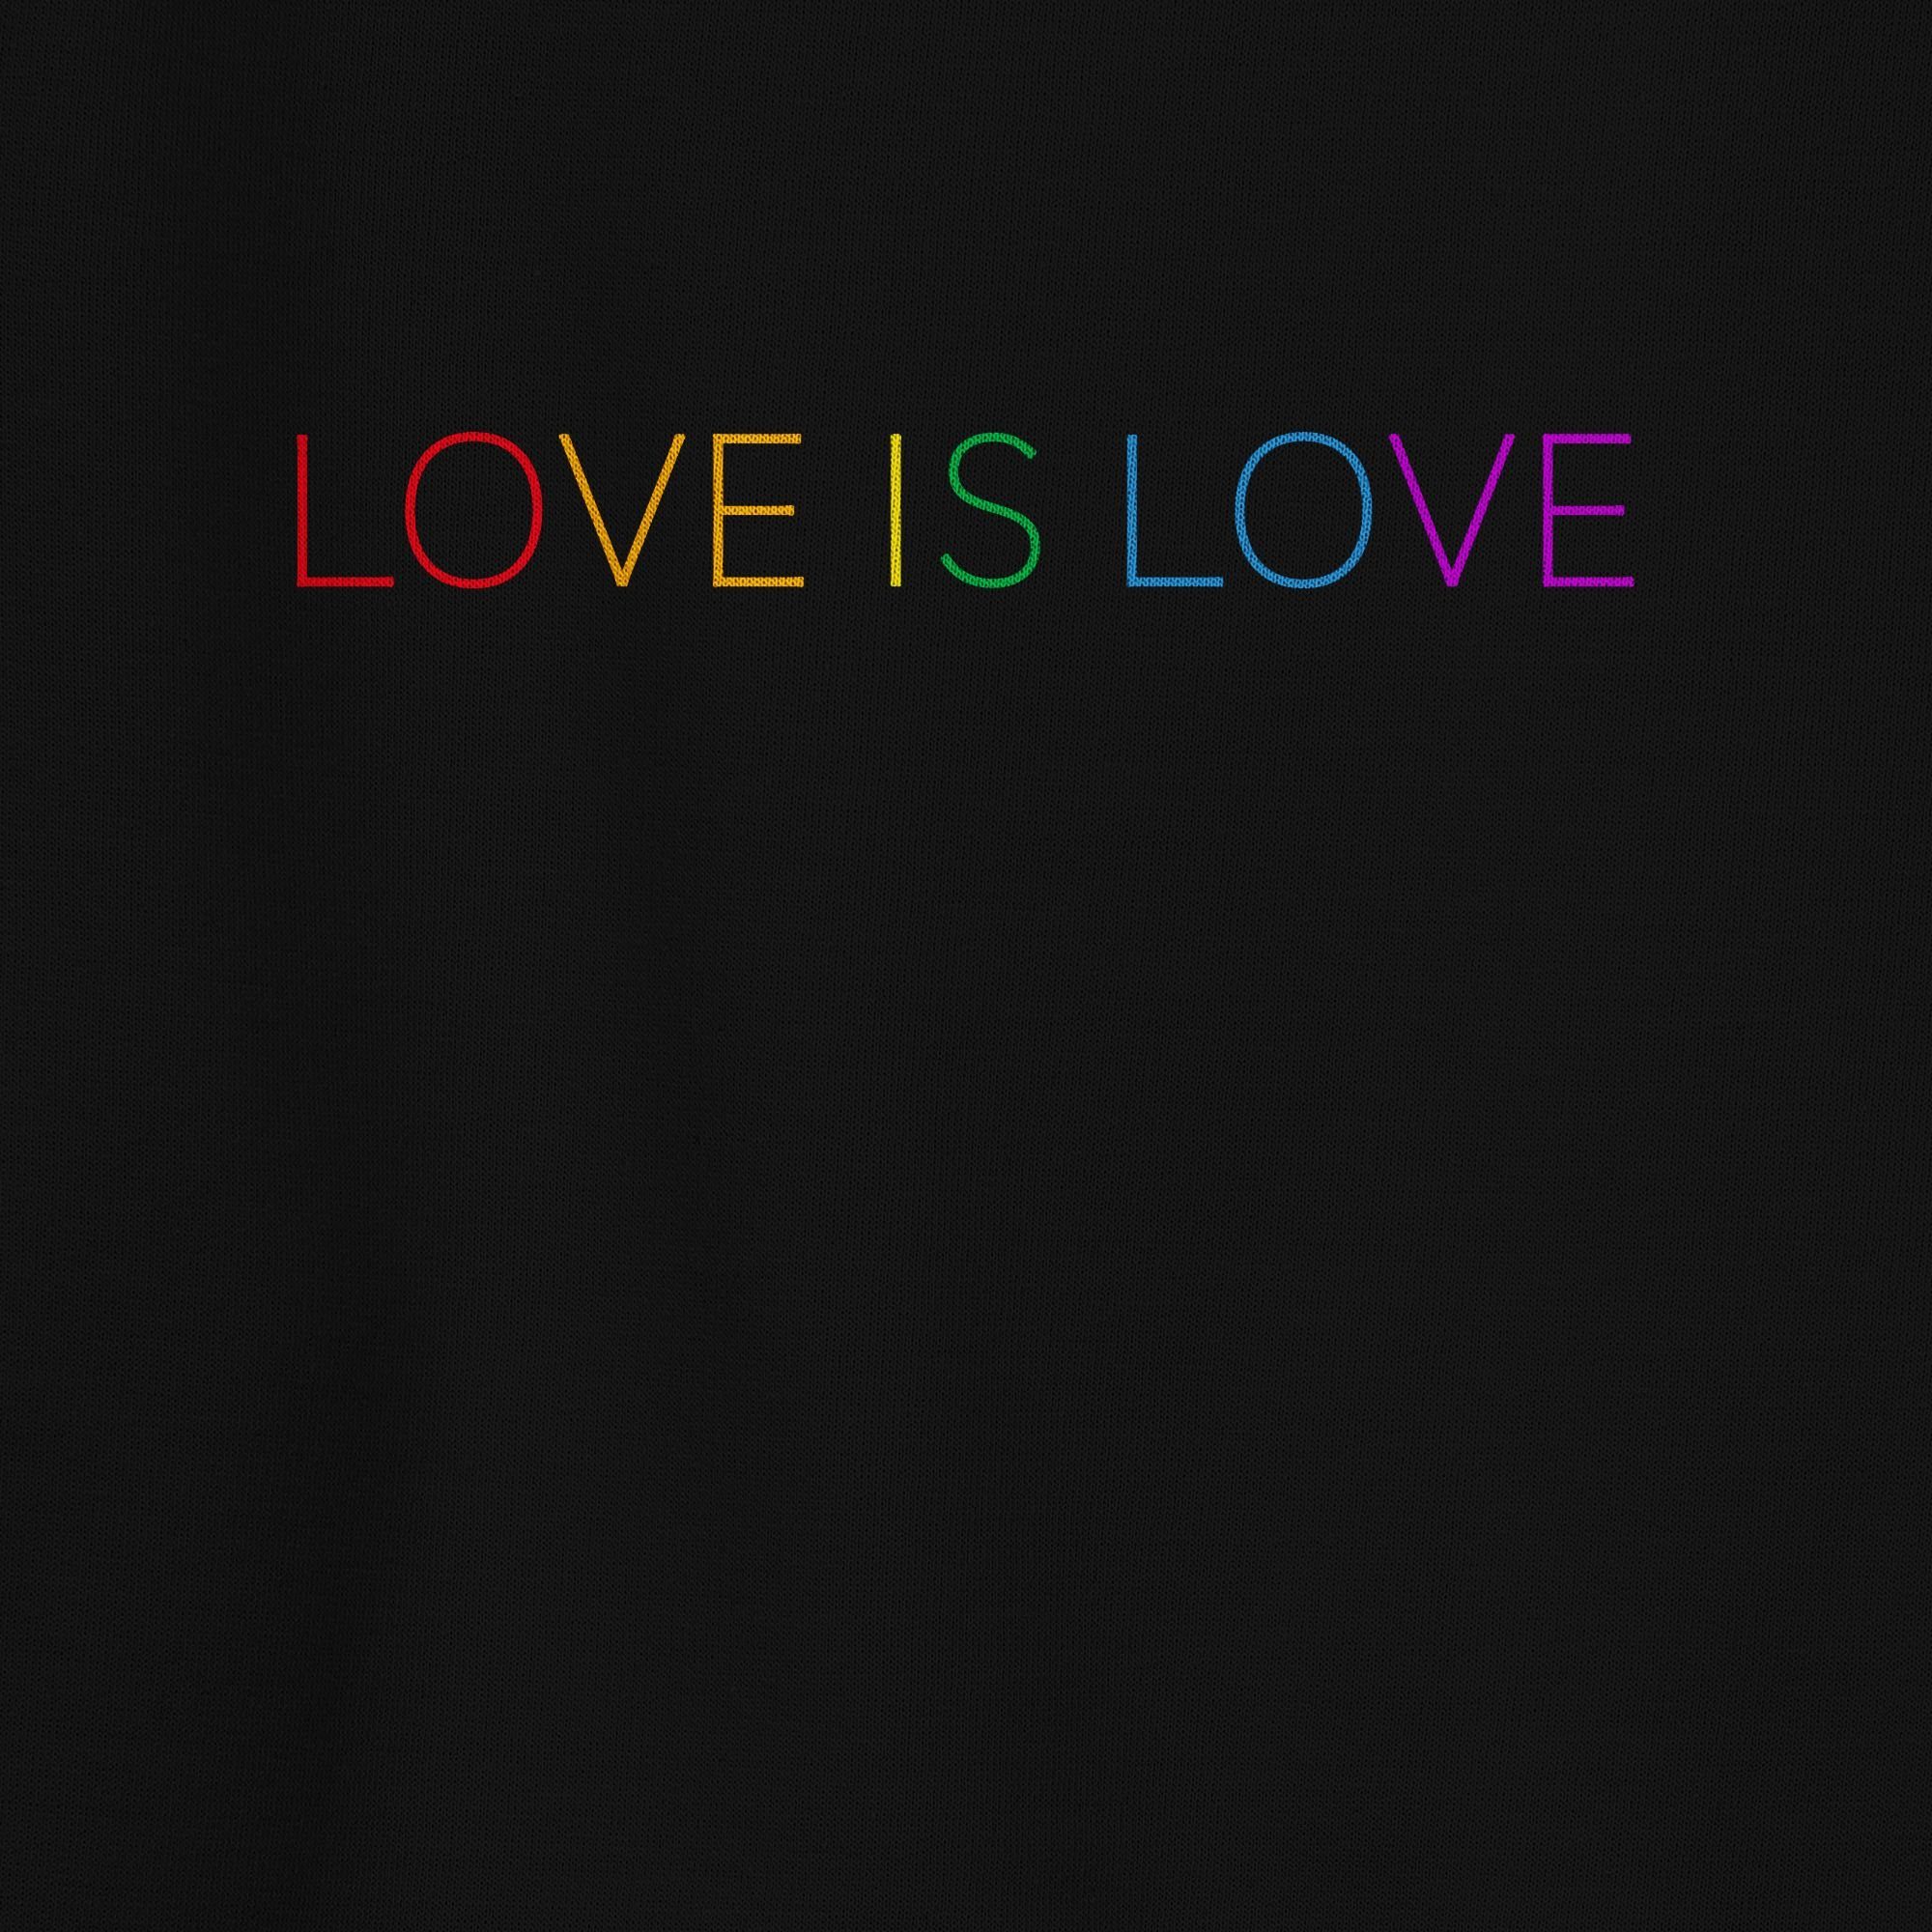 Shirtracer Sweatshirt Love is Regenbogen 1 - Kleidung - Schwarz Pride LGBT (1-tlg) Love